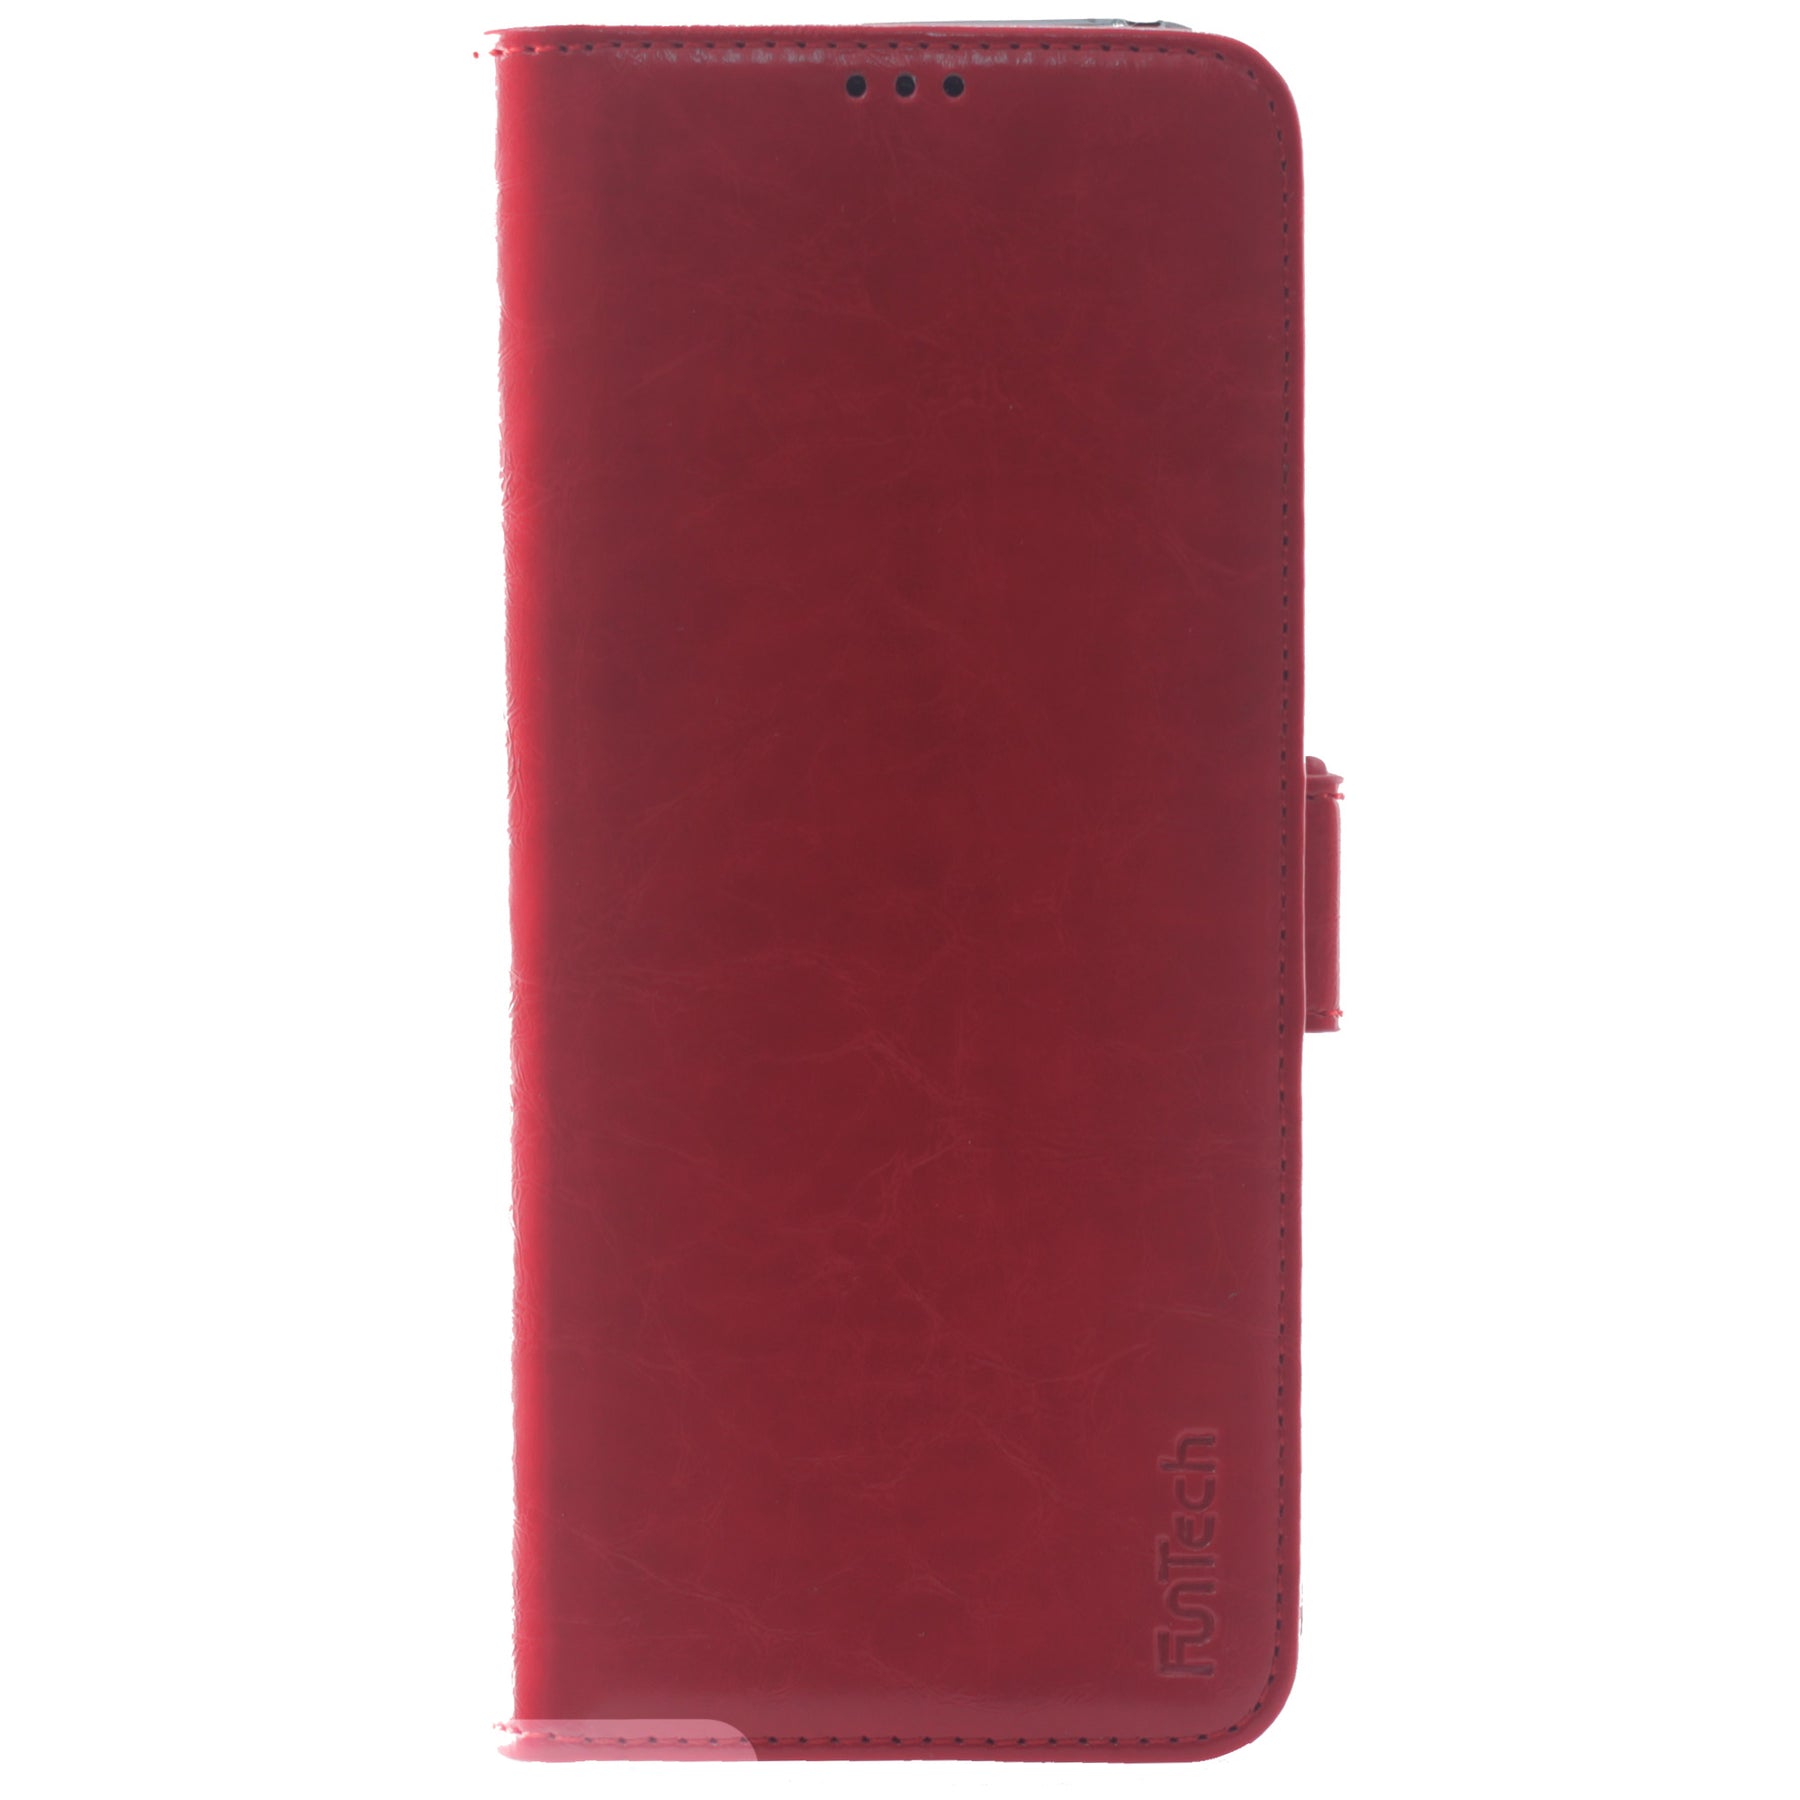 Samsung s8+ red wallet case